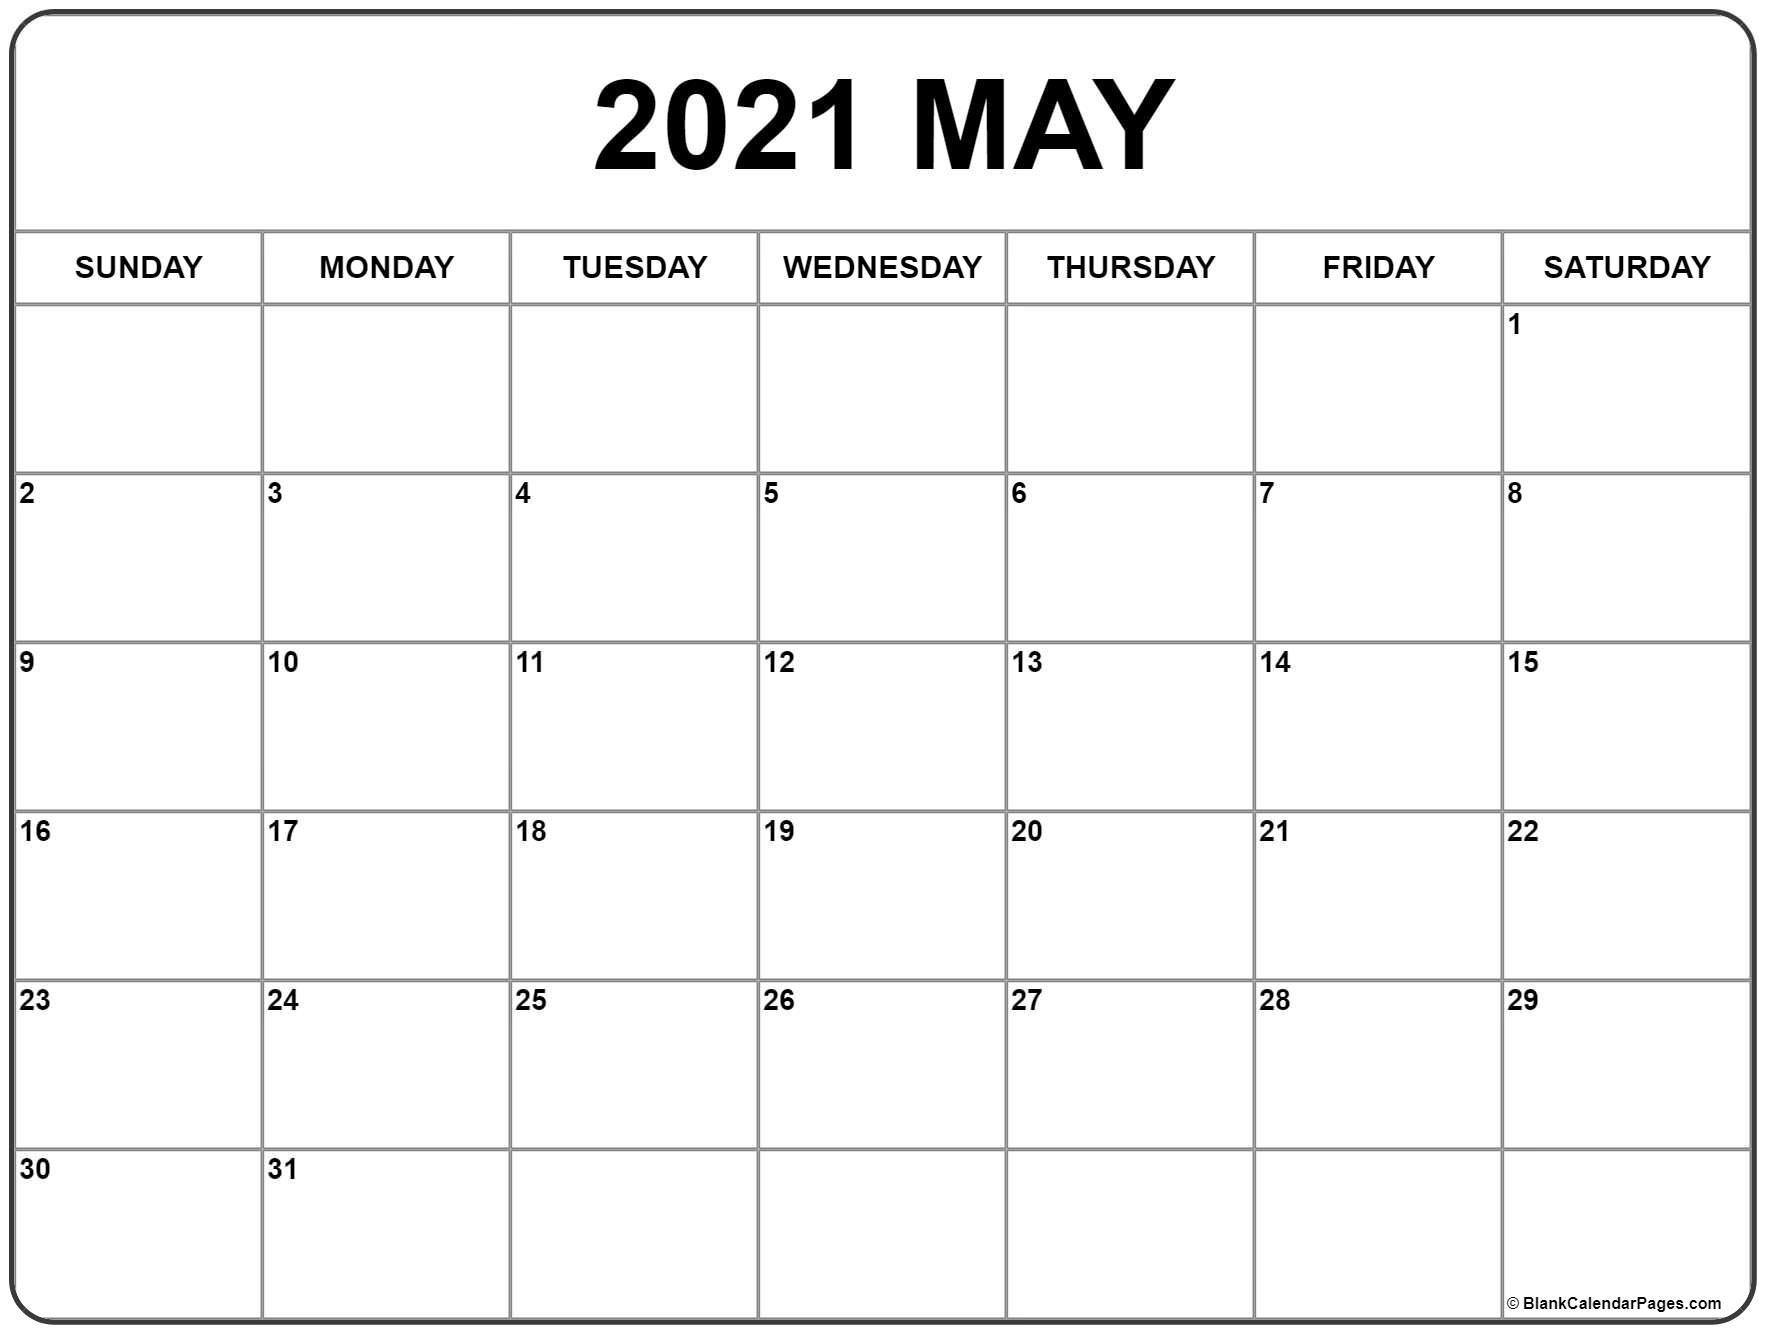 May 2021 calendar